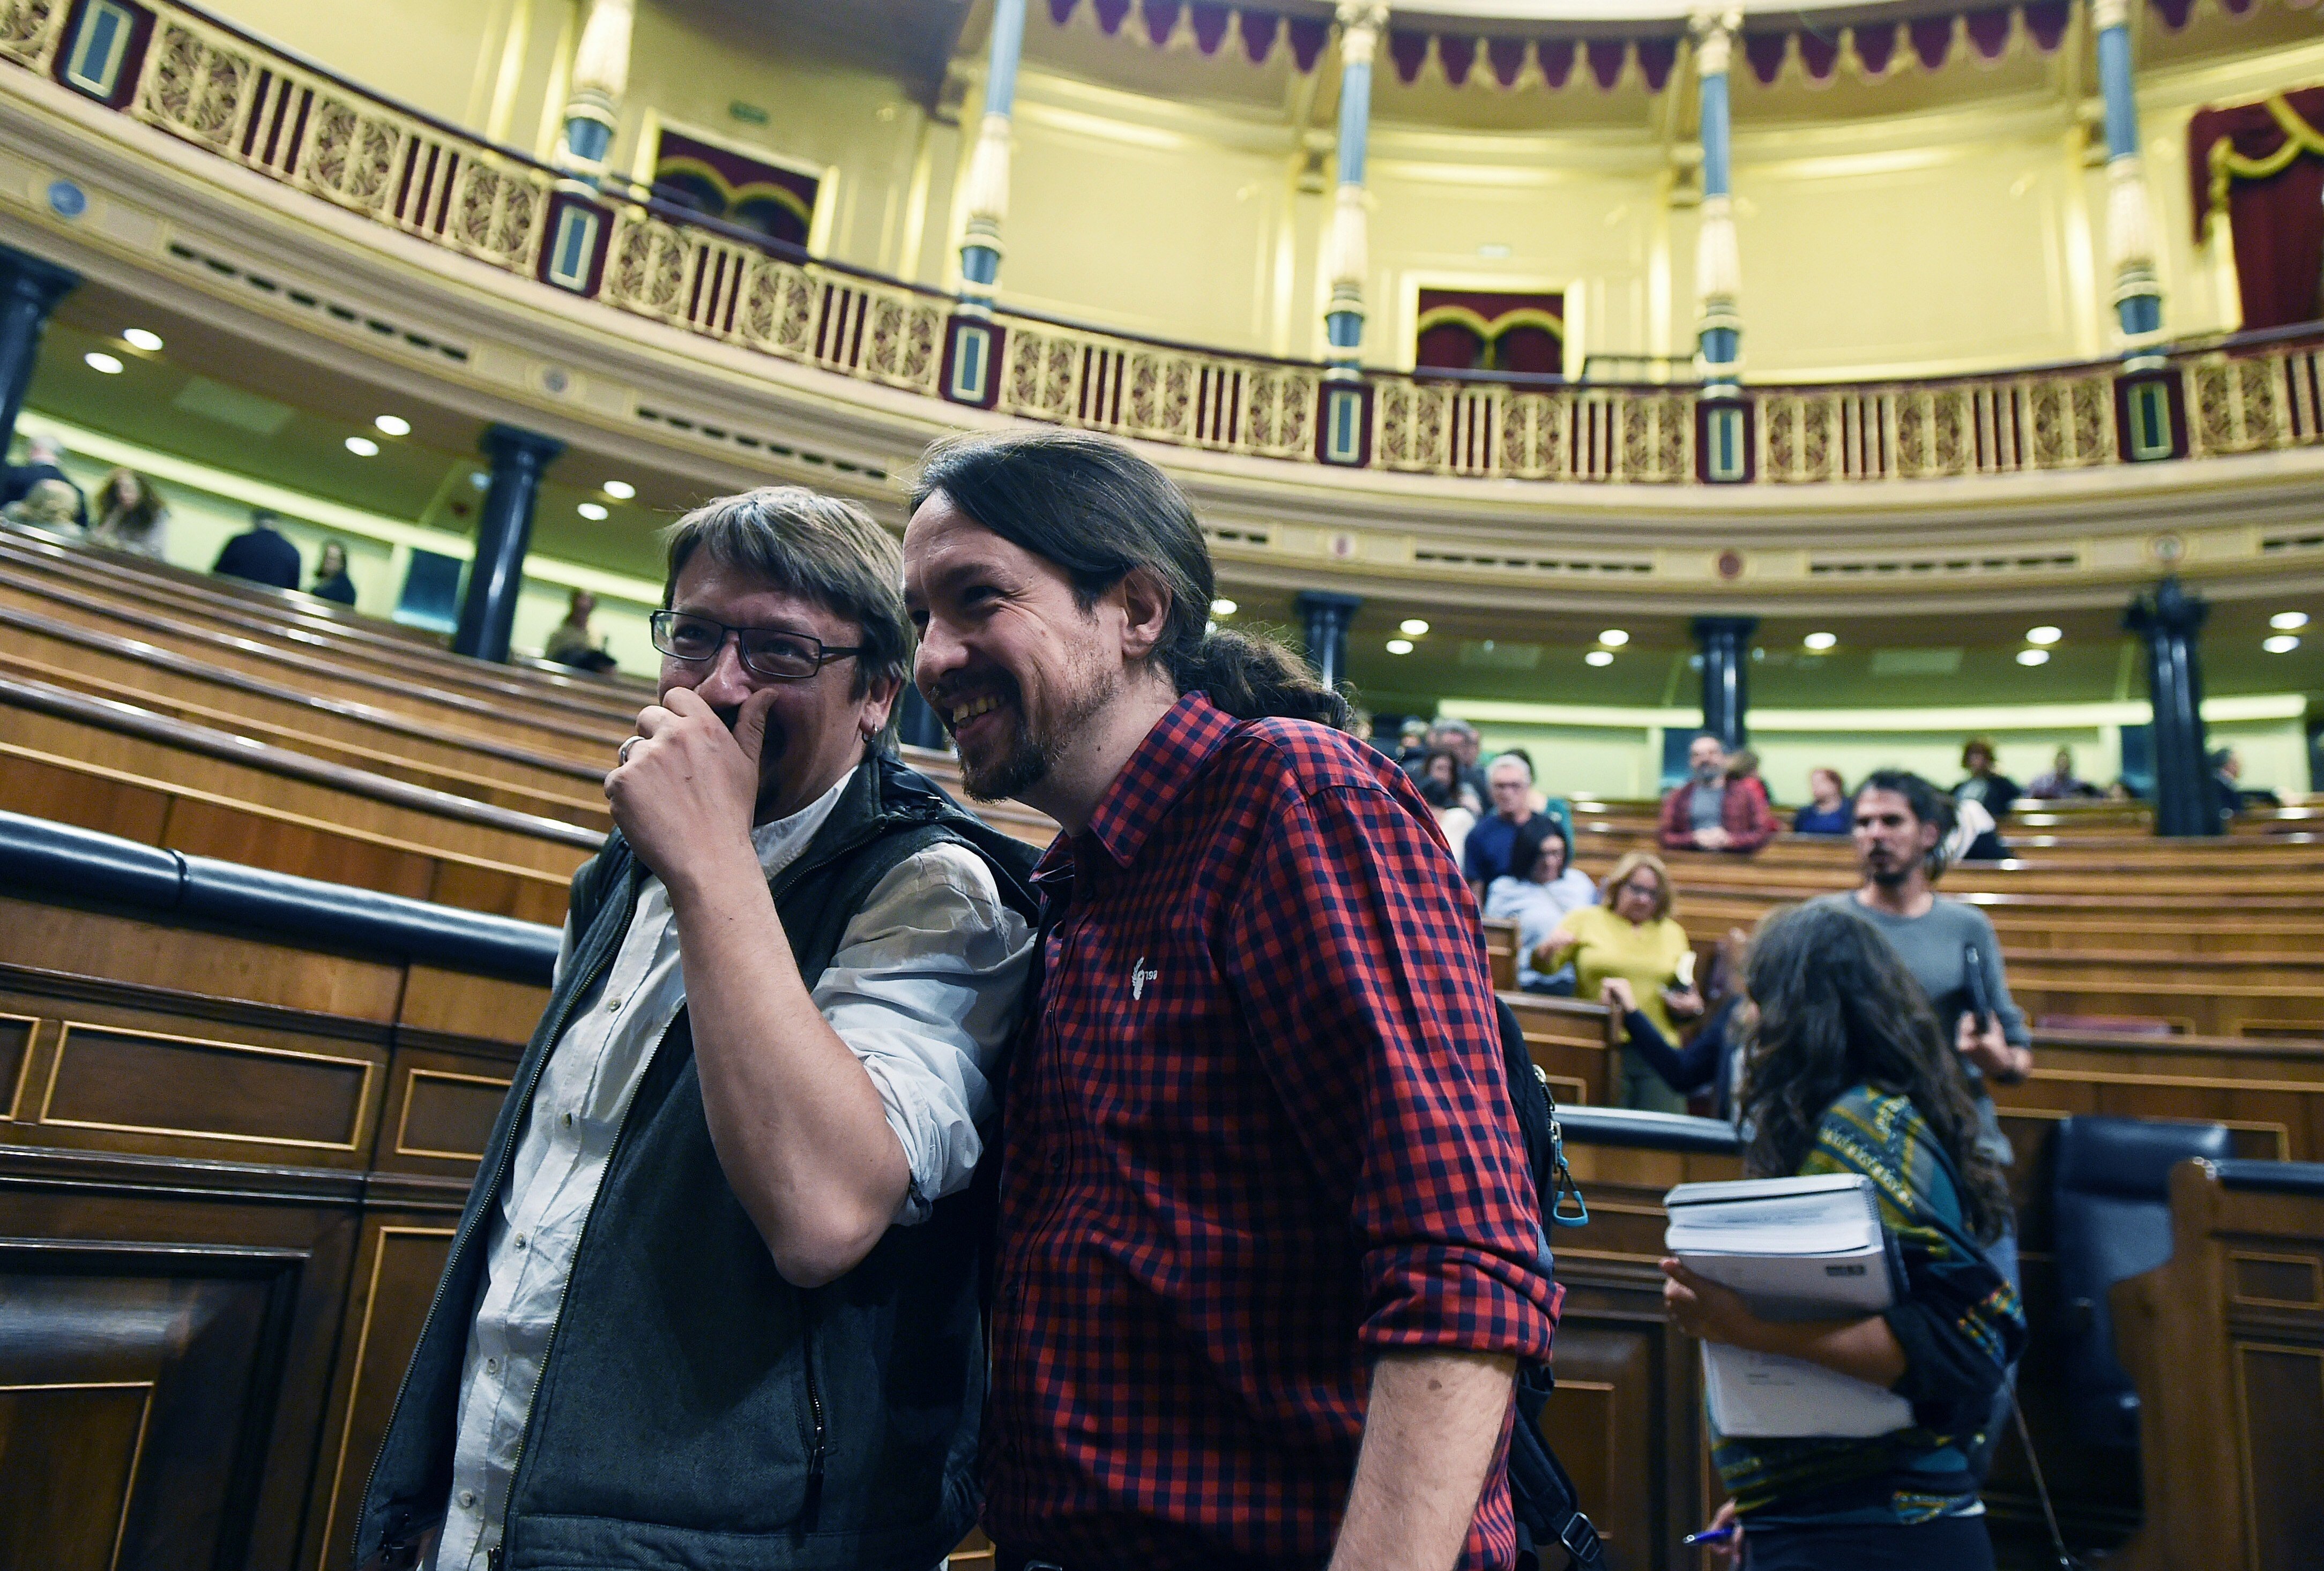 PSOE i Podemos reaccionen apel·lant a una "solució política"